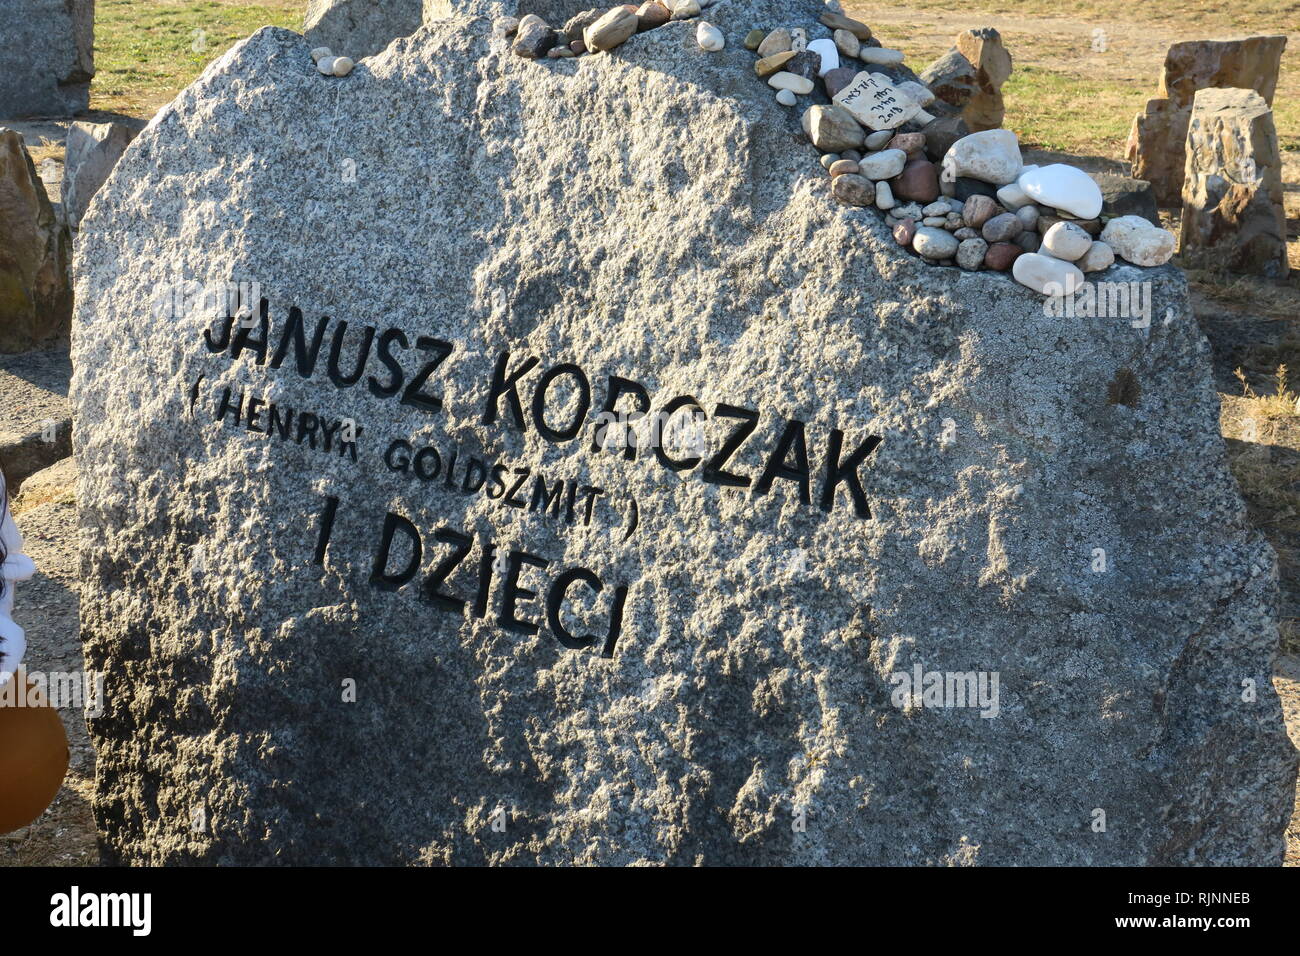 Questa immagine mostra il monumento di pietra per Janusz Korczak che è stato messo in Treblinka per onorare il suo nome. Foto Stock